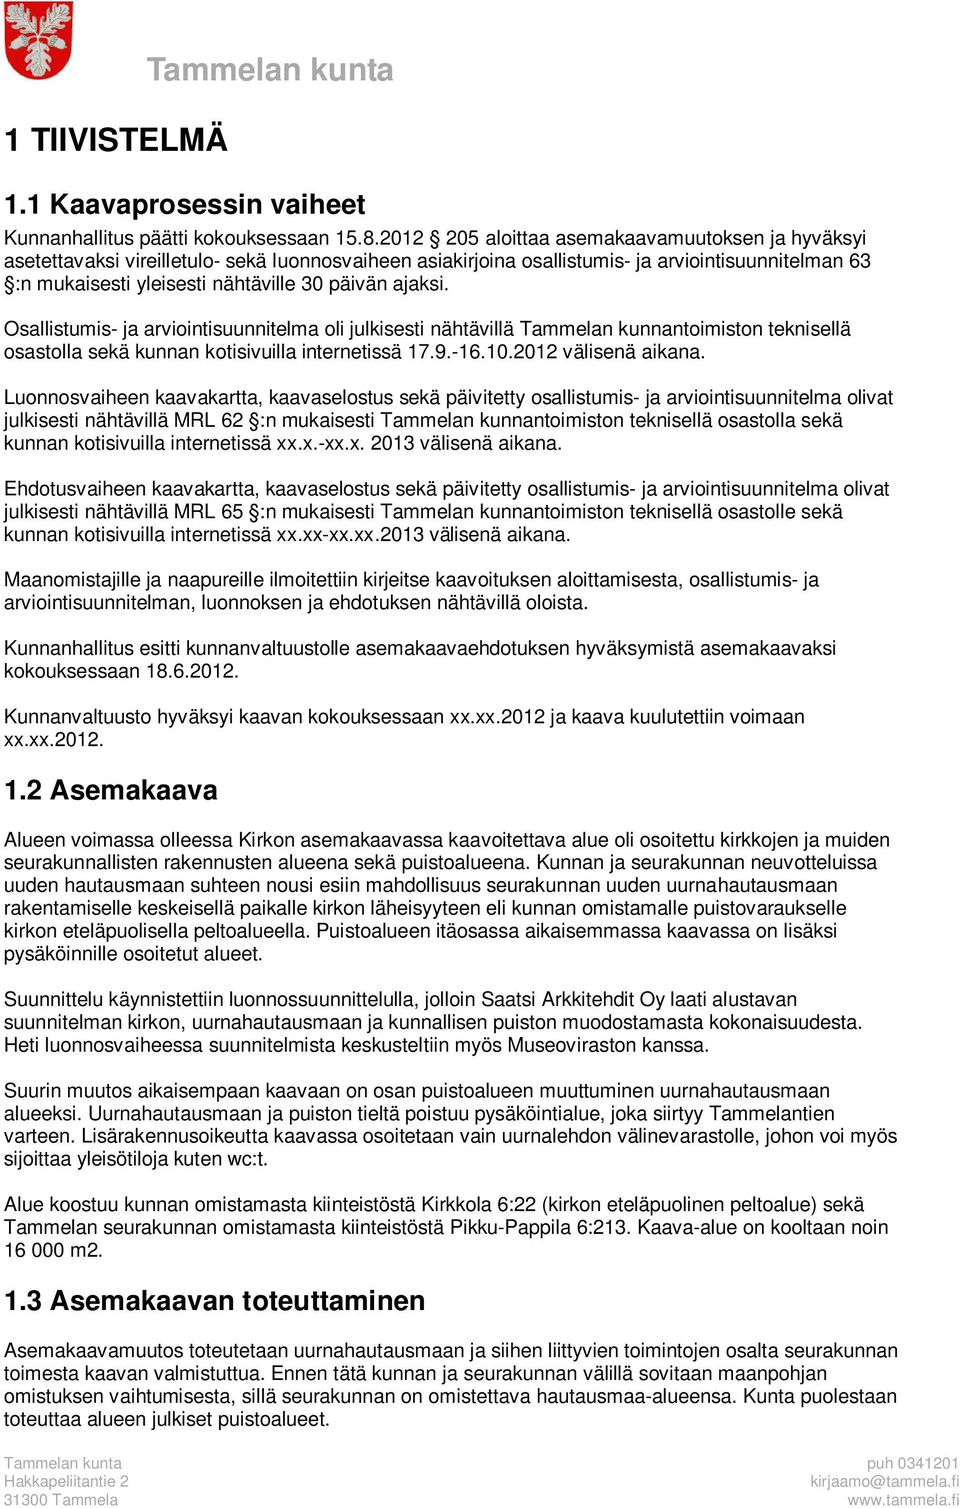 ajaksi. Osallistumis- ja arviointisuunnitelma oli julkisesti nähtävillä Tammelan kunnantoimiston teknisellä osastolla sekä kunnan kotisivuilla internetissä 17.9.-16.10.2012 välisenä aikana.